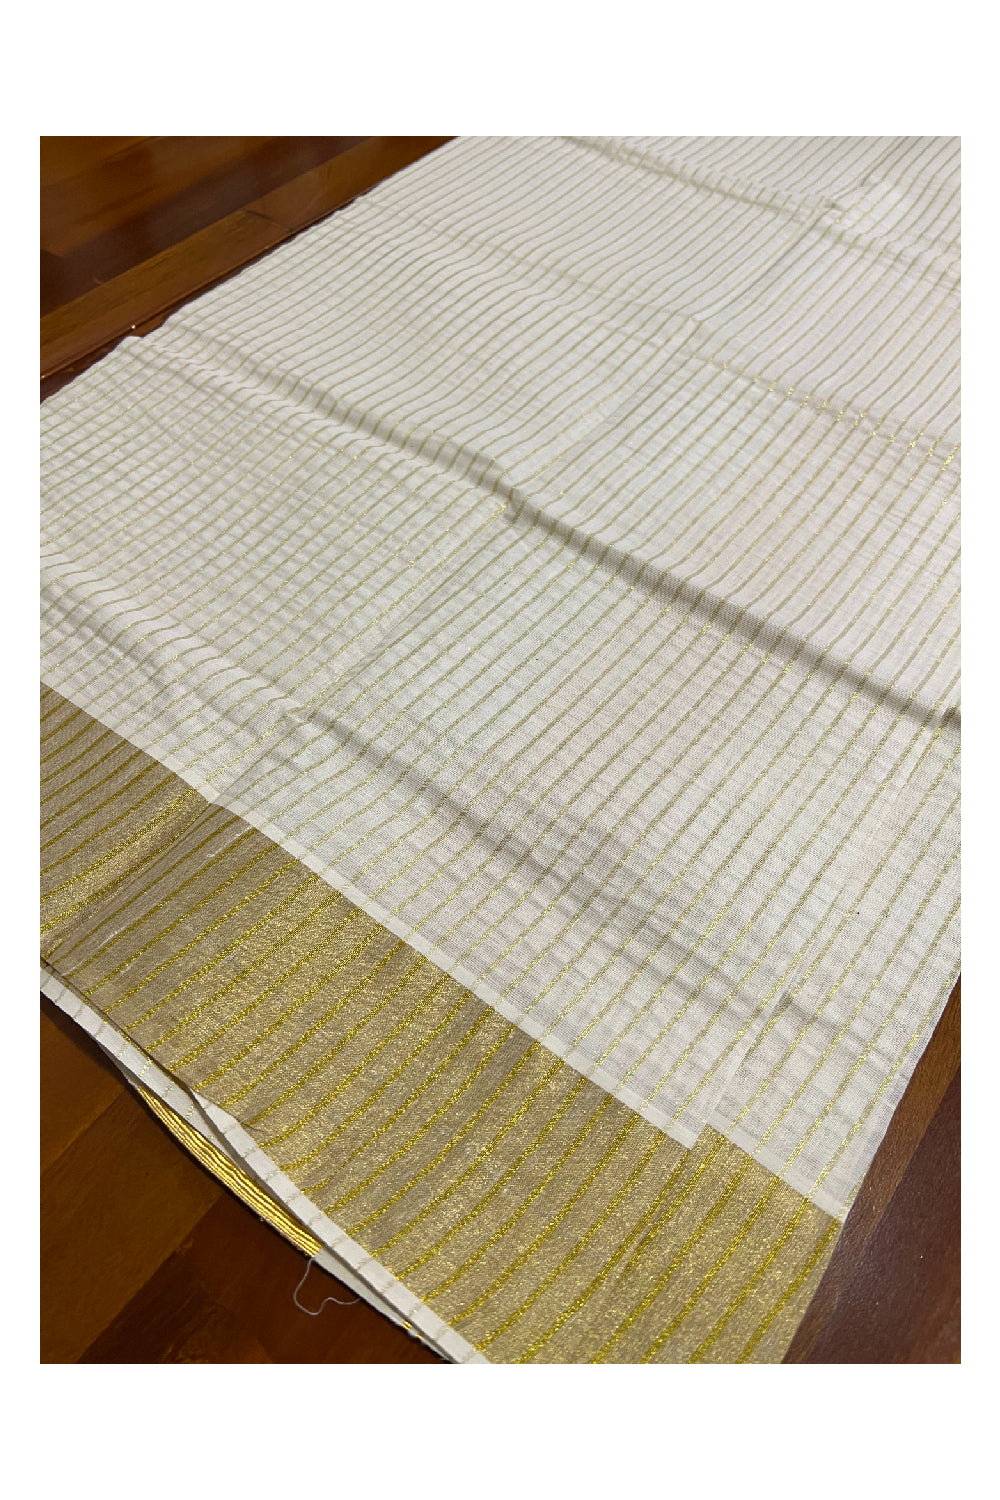 Kerala Cotton Set Mundu (Mundum Neriyathum) with Kasavu Lines on Body 2.80 Mtrs